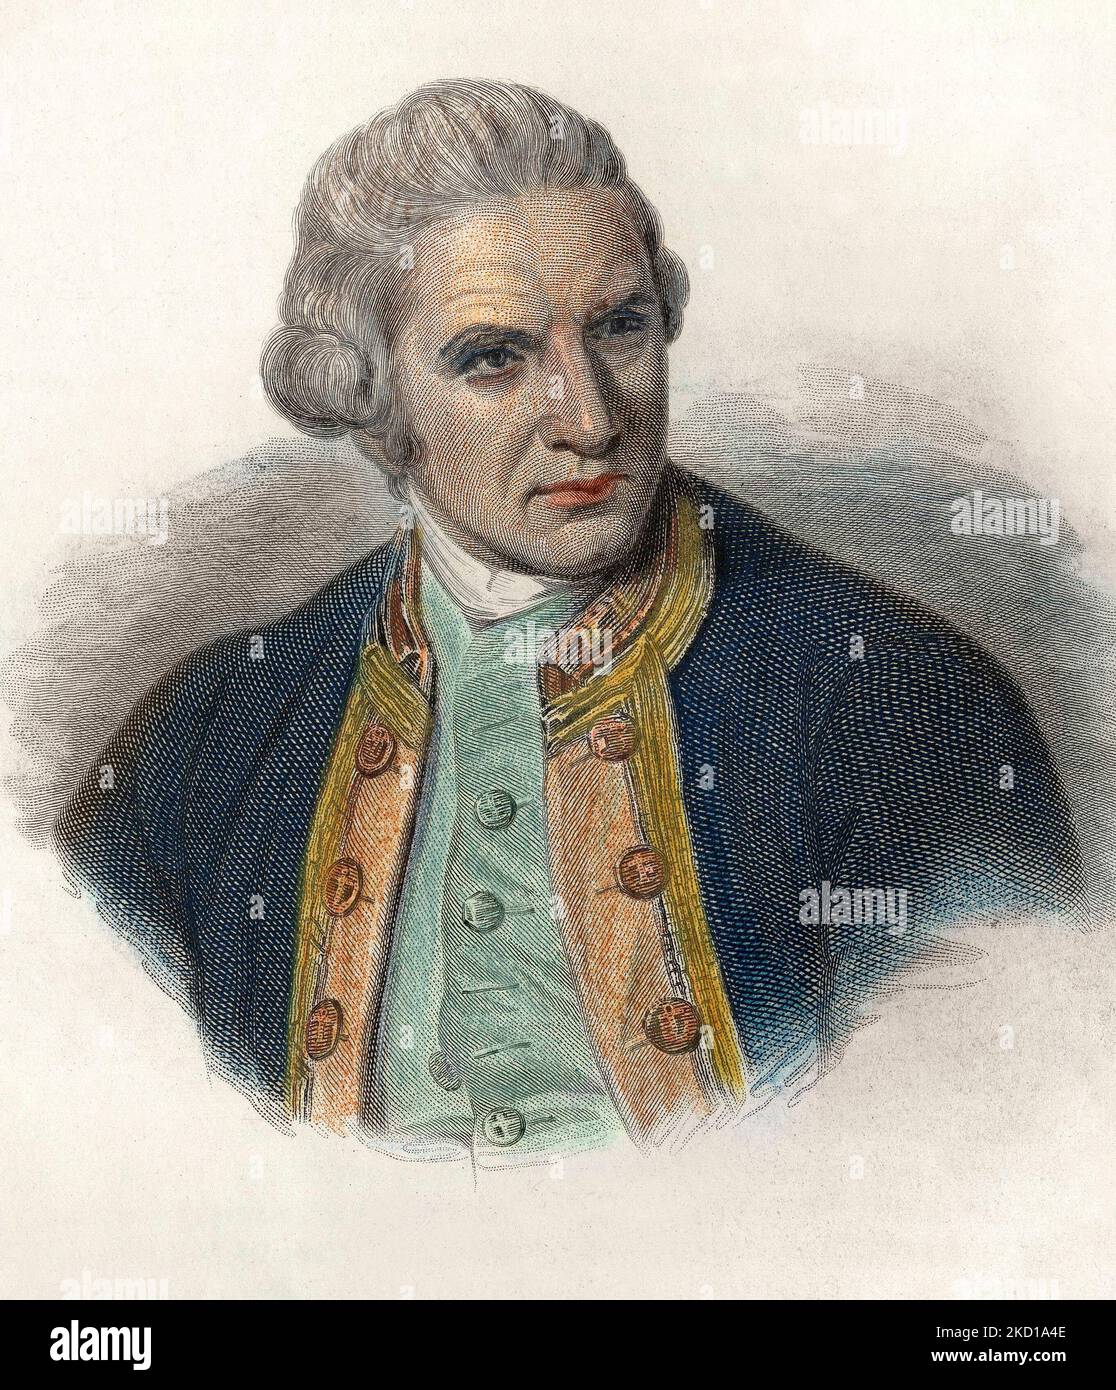 Portrait de James Cook (1728-1779), navigateur anglais. 1833 Stock Photo